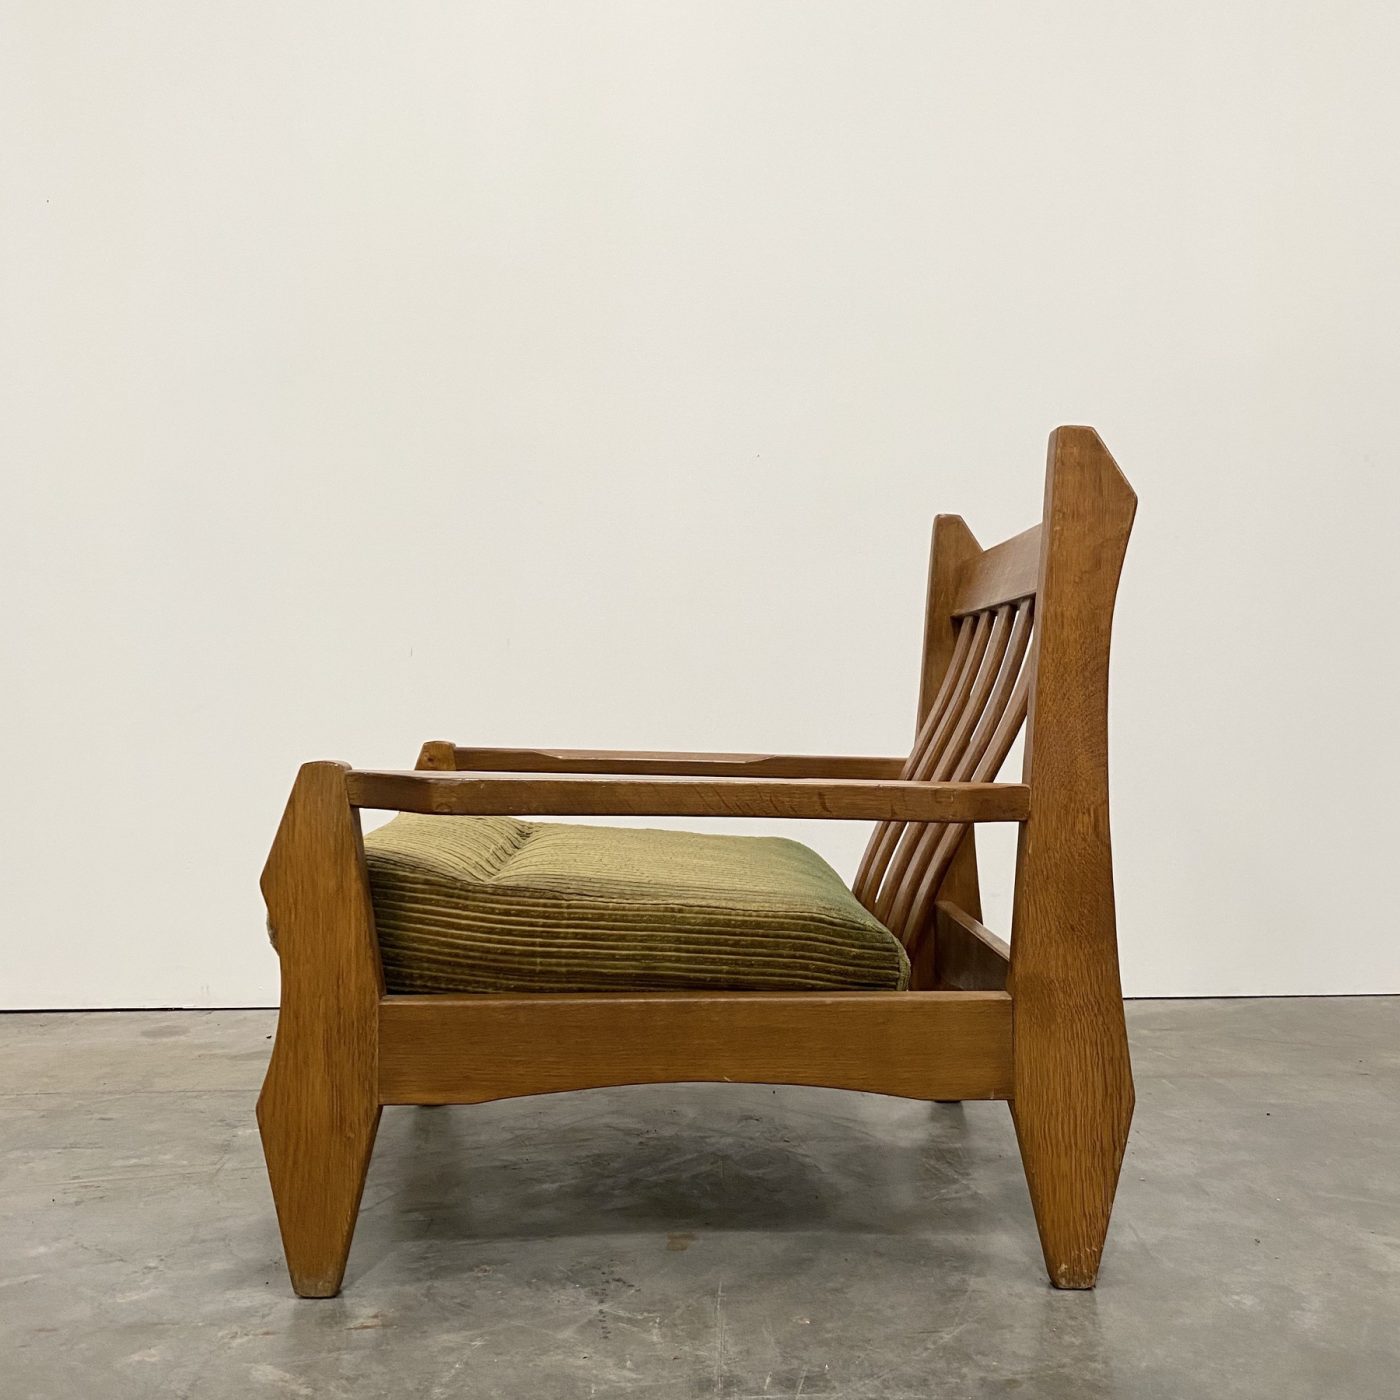 objet-vagabond-oak-armchairs0002